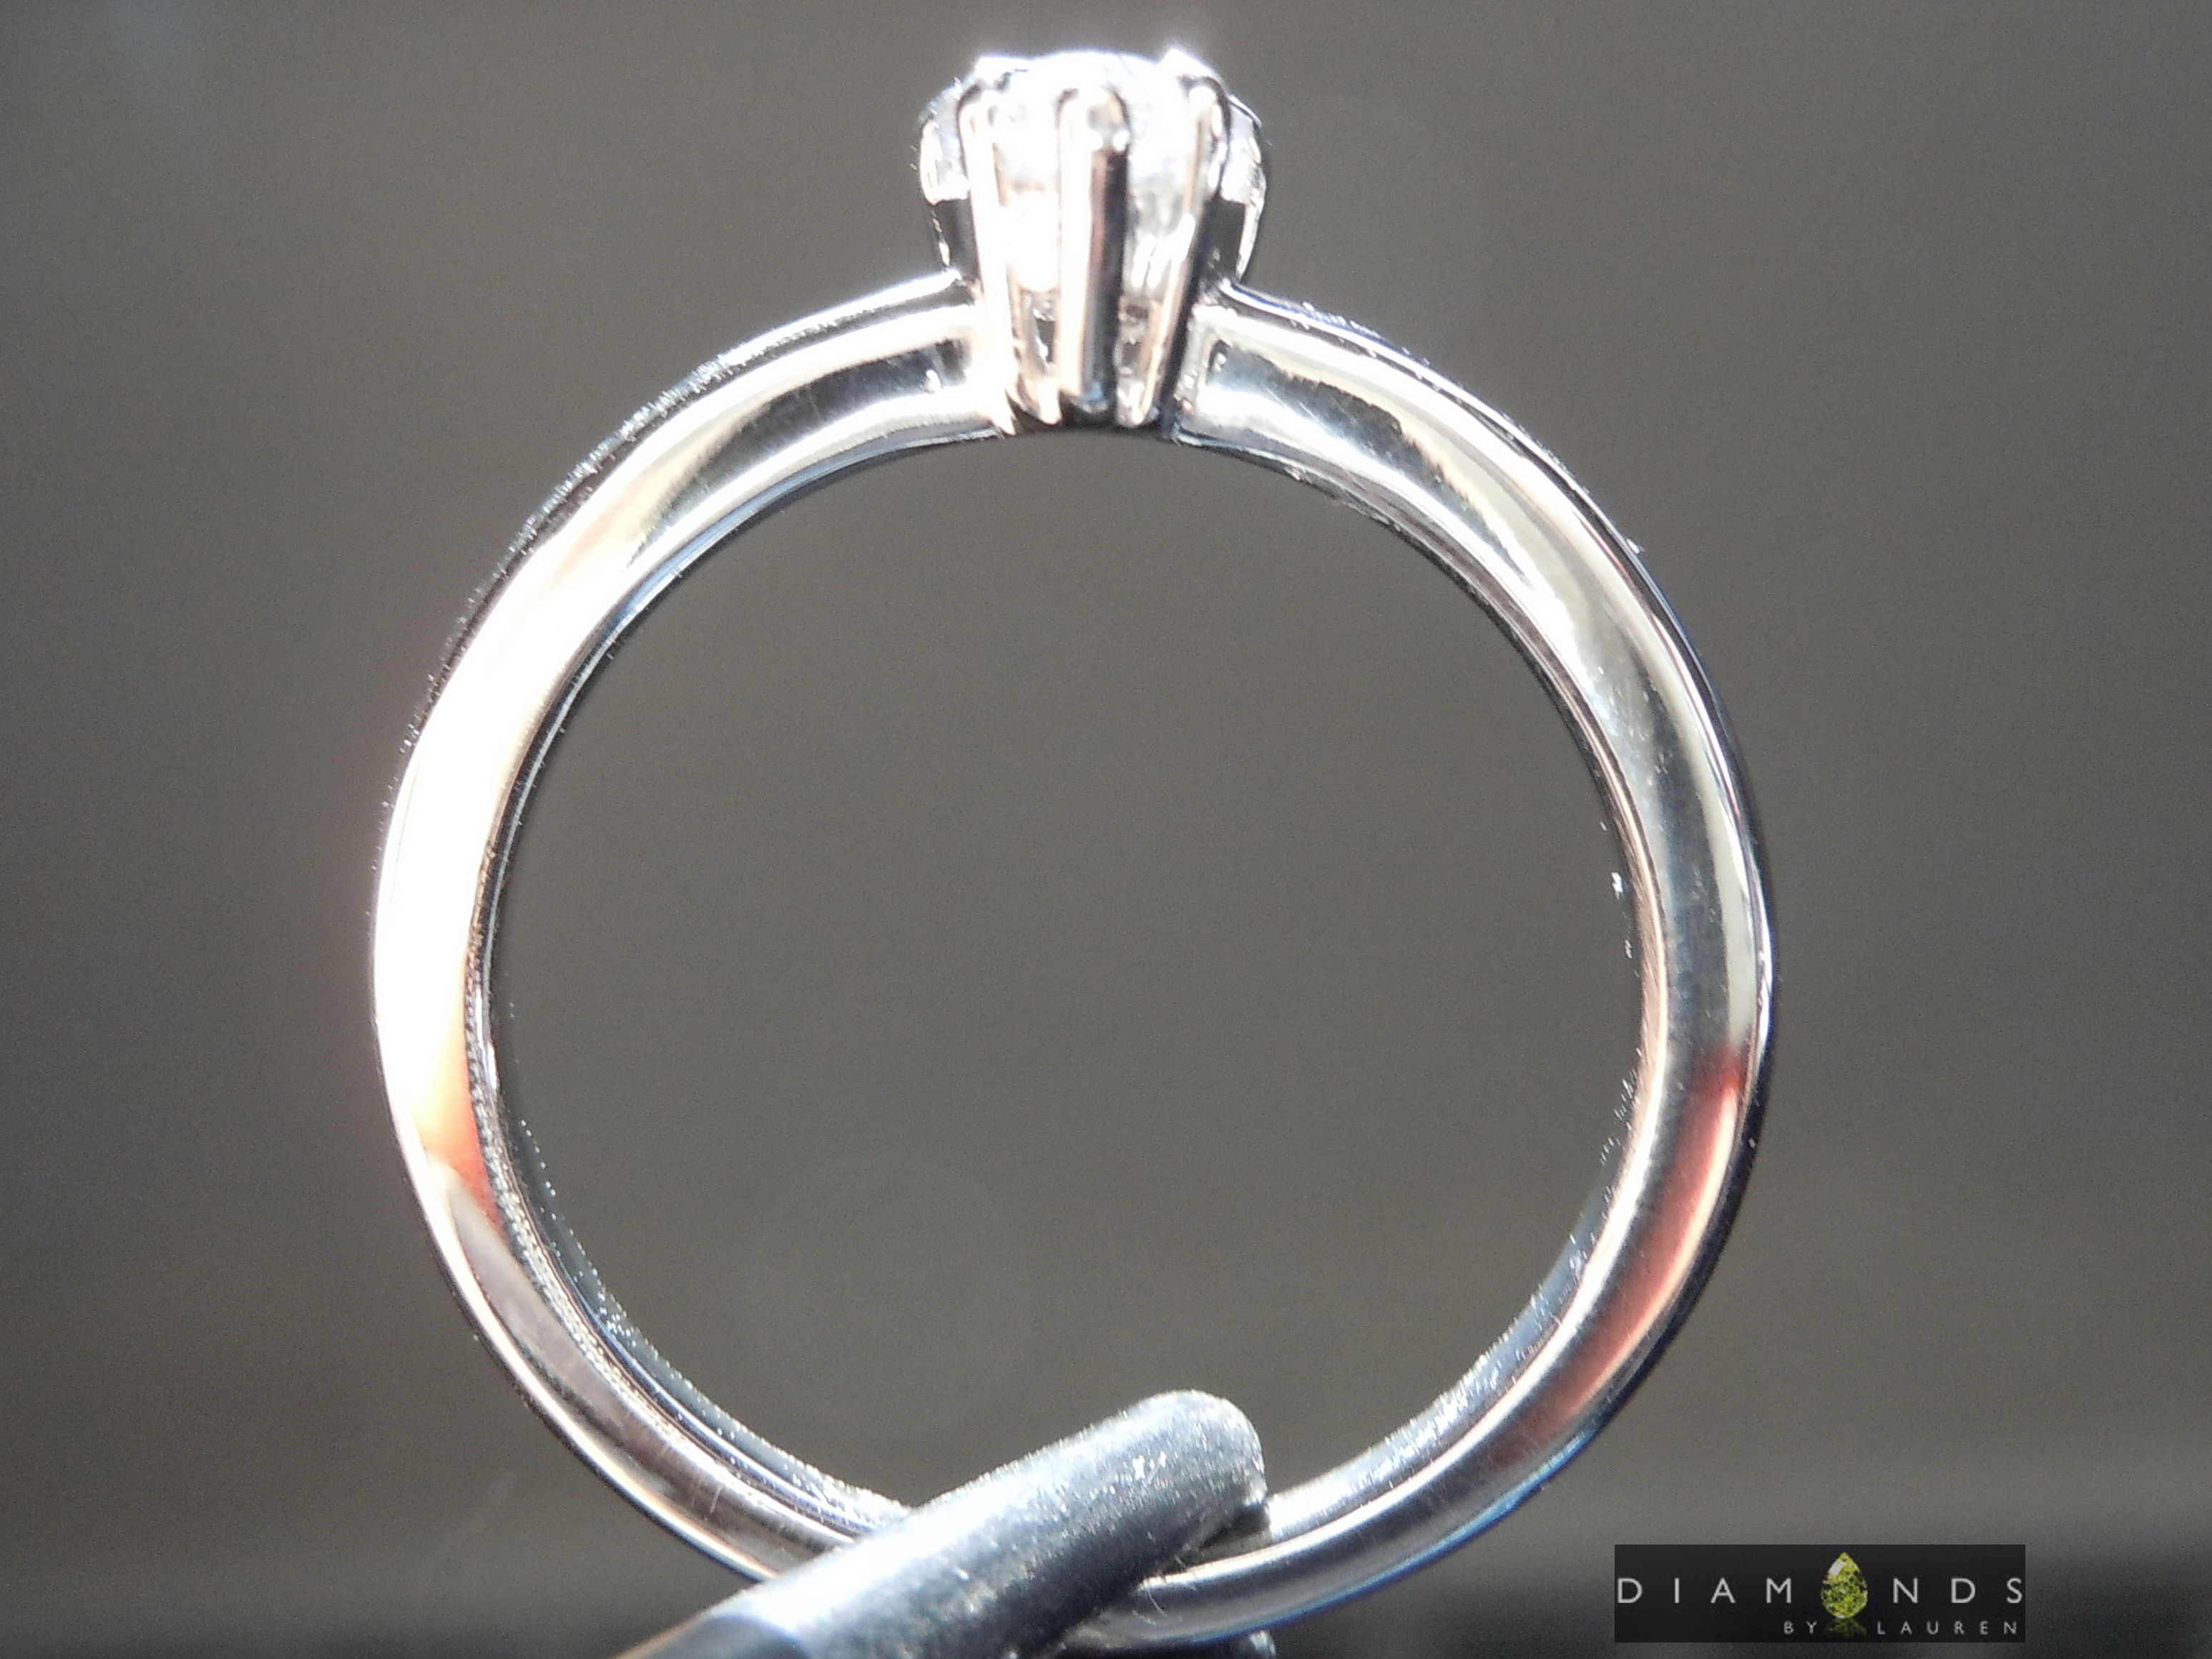 gray diamond ring